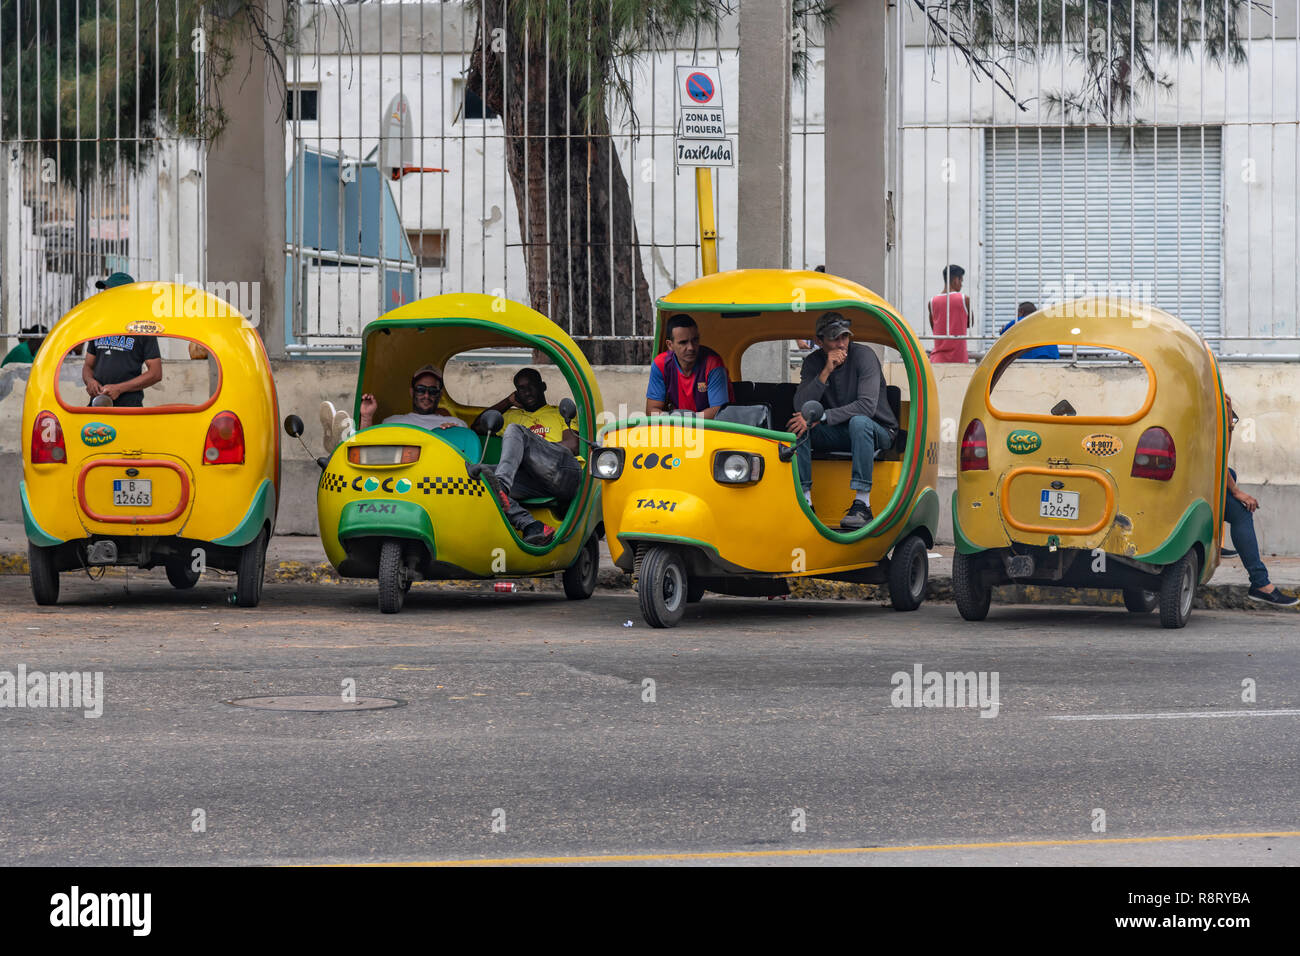 Kubanische Coco Taxifahrer eine Pause vor der Suche mehr Passagiere in ihrer unverwechselbaren gelben Taxis. Havanna Kuba Stockfoto